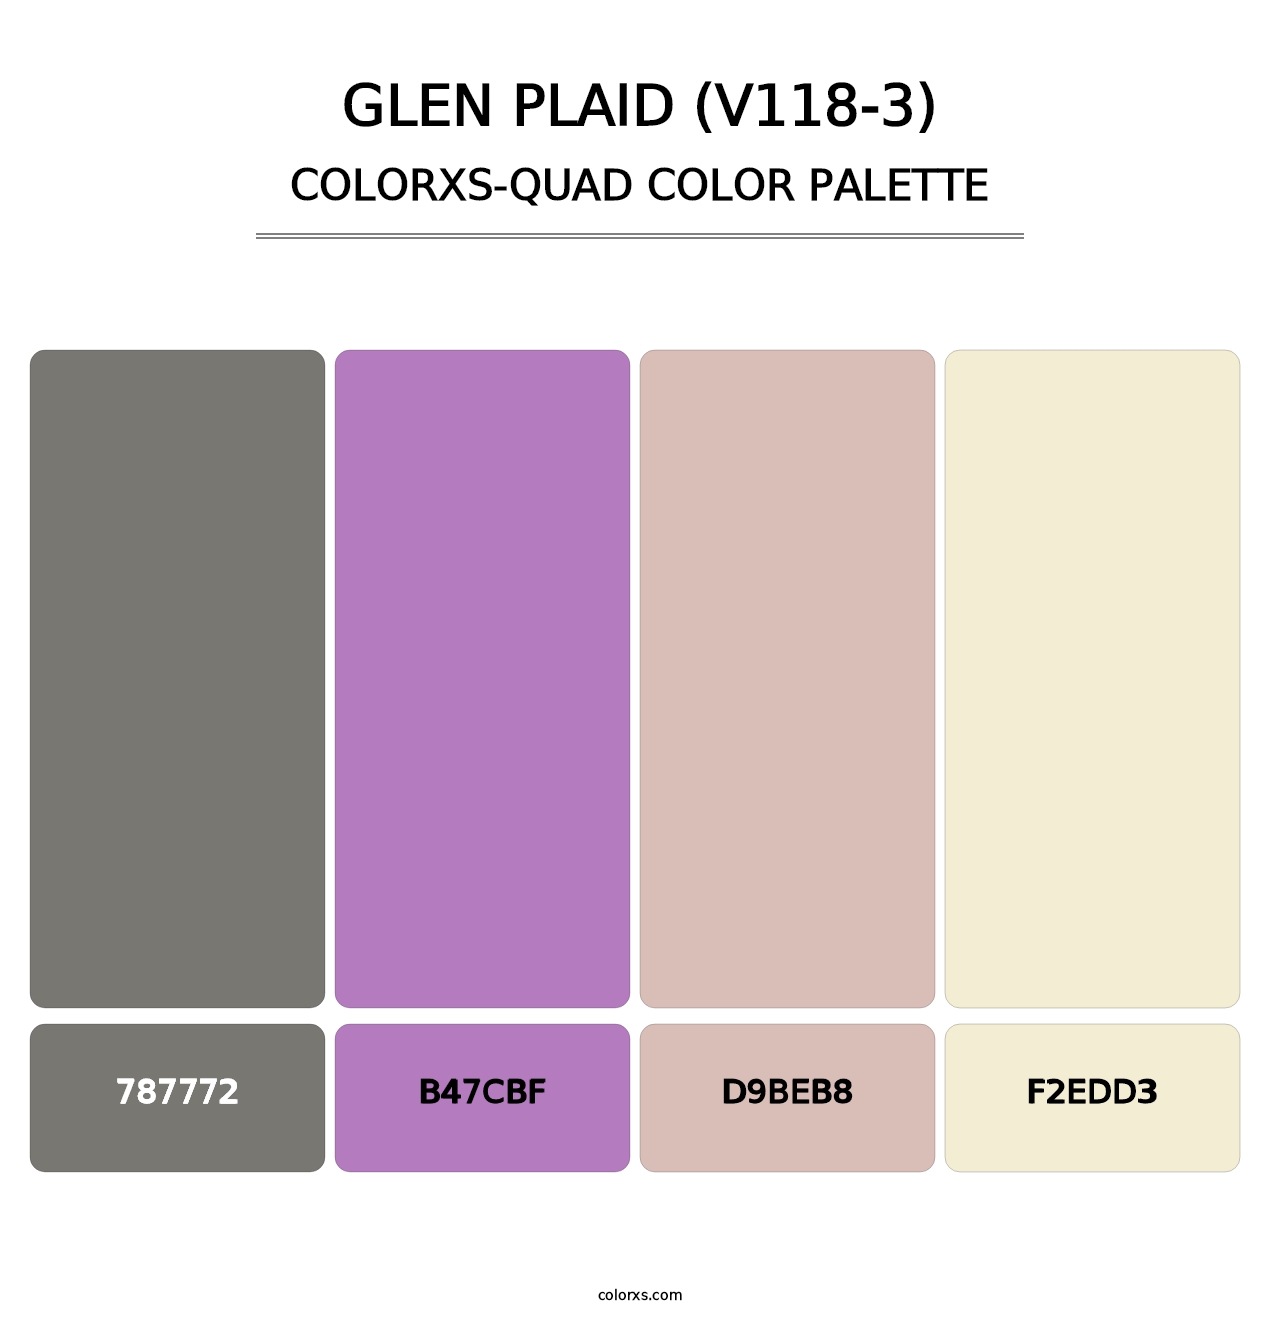 Glen Plaid (V118-3) - Colorxs Quad Palette